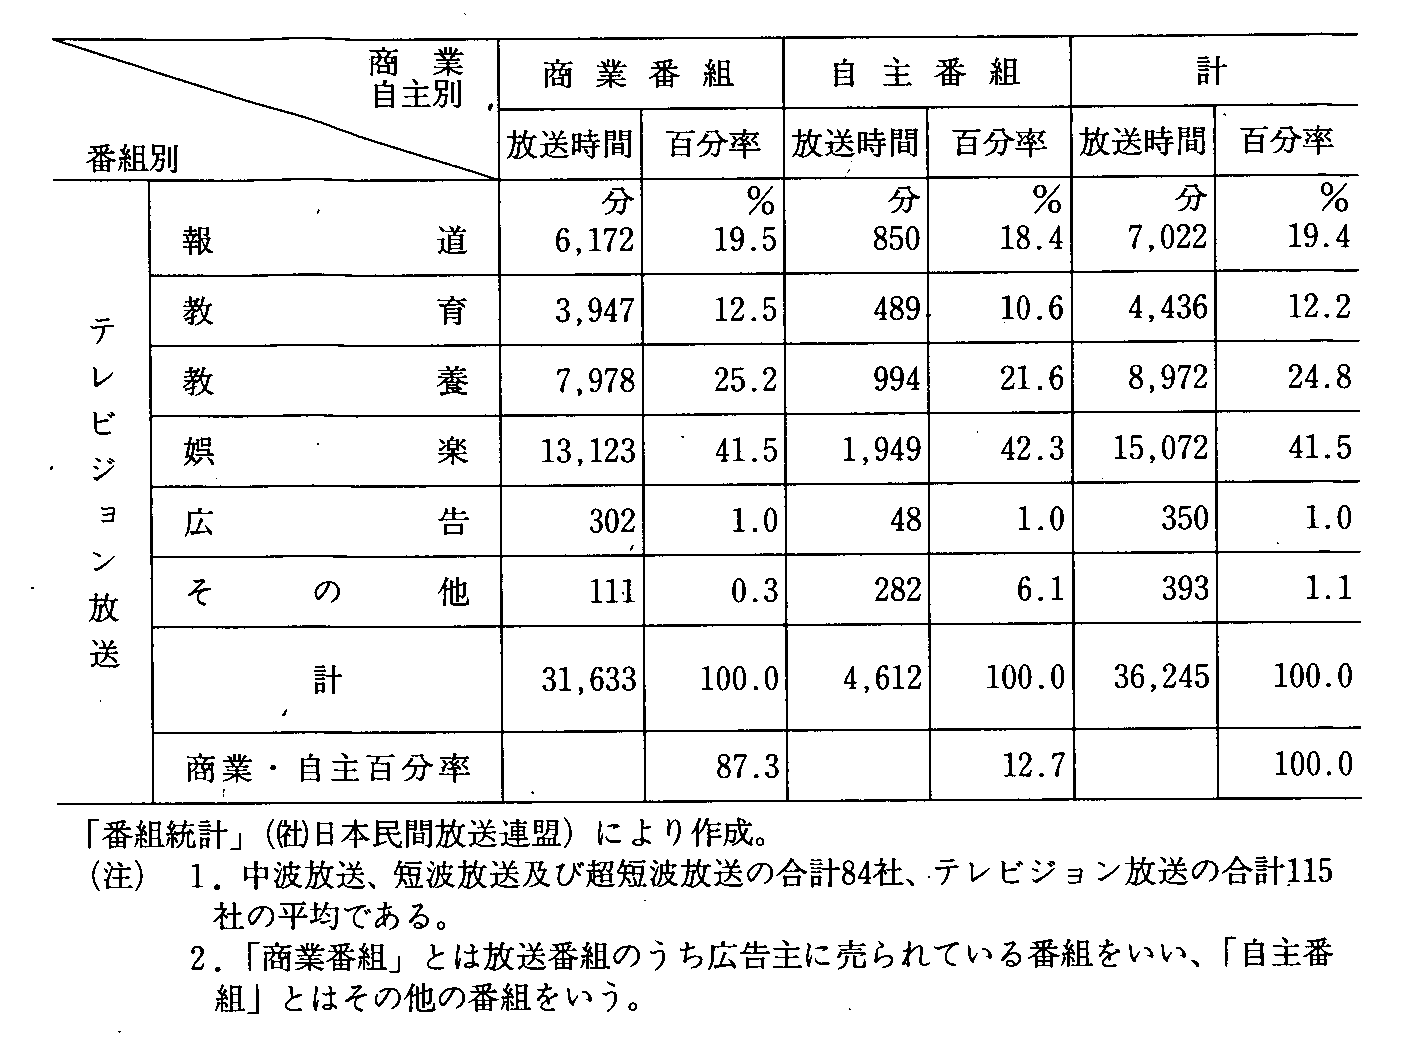 5-5 ԕ̕ށE1Ԕ䗦(3N10`12)(2)